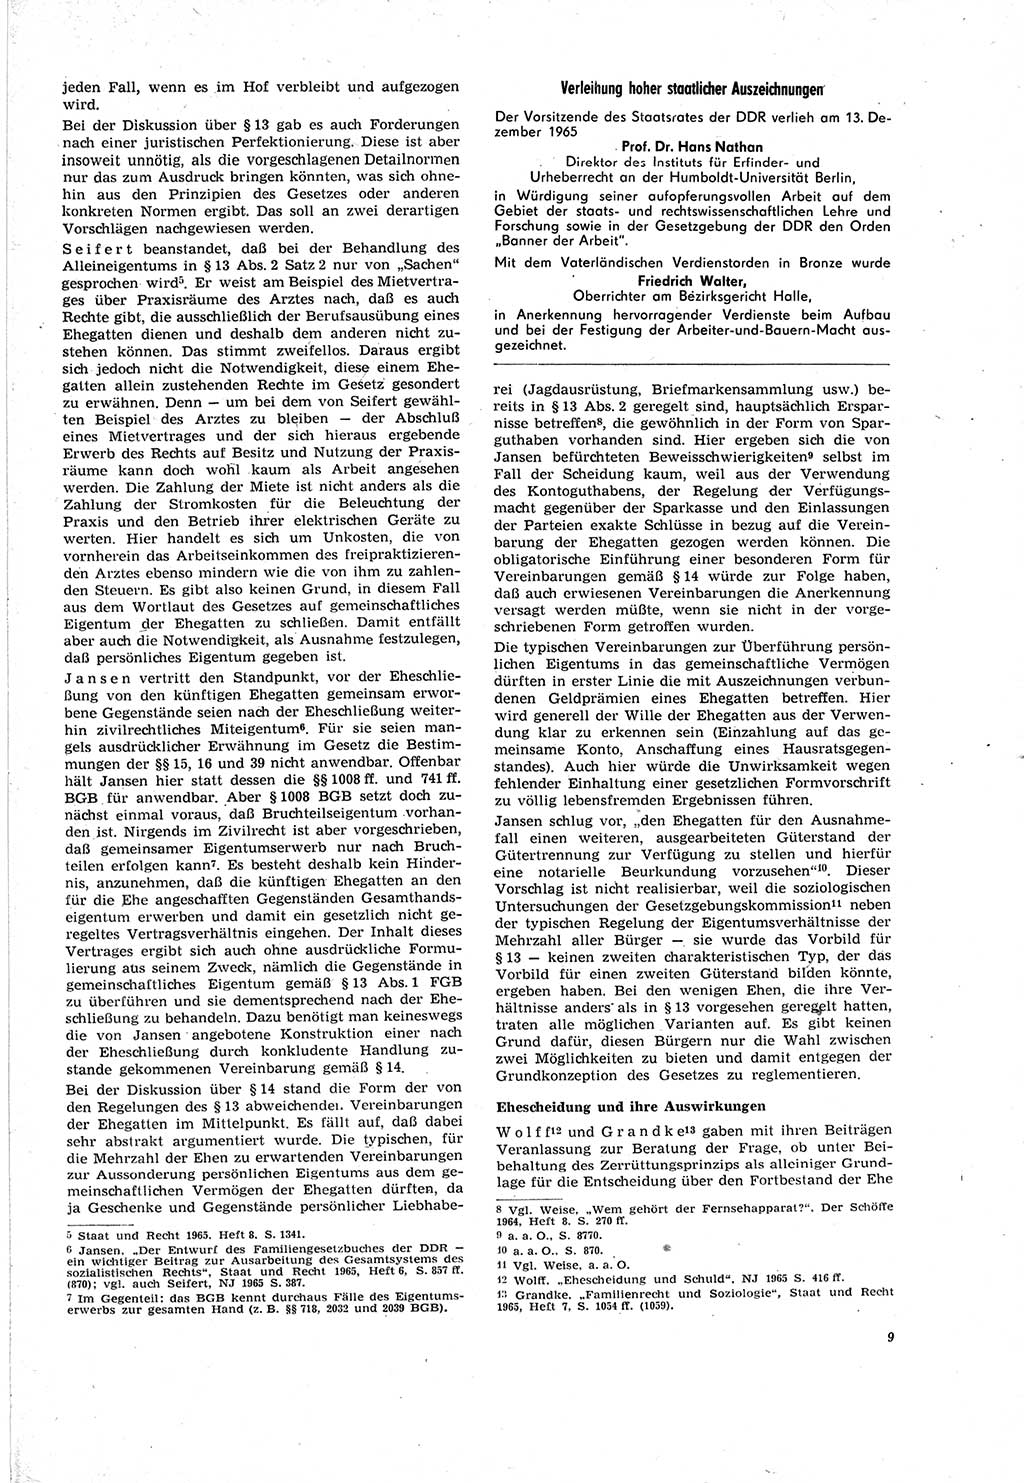 Neue Justiz (NJ), Zeitschrift für Recht und Rechtswissenschaft [Deutsche Demokratische Republik (DDR)], 20. Jahrgang 1966, Seite 9 (NJ DDR 1966, S. 9)